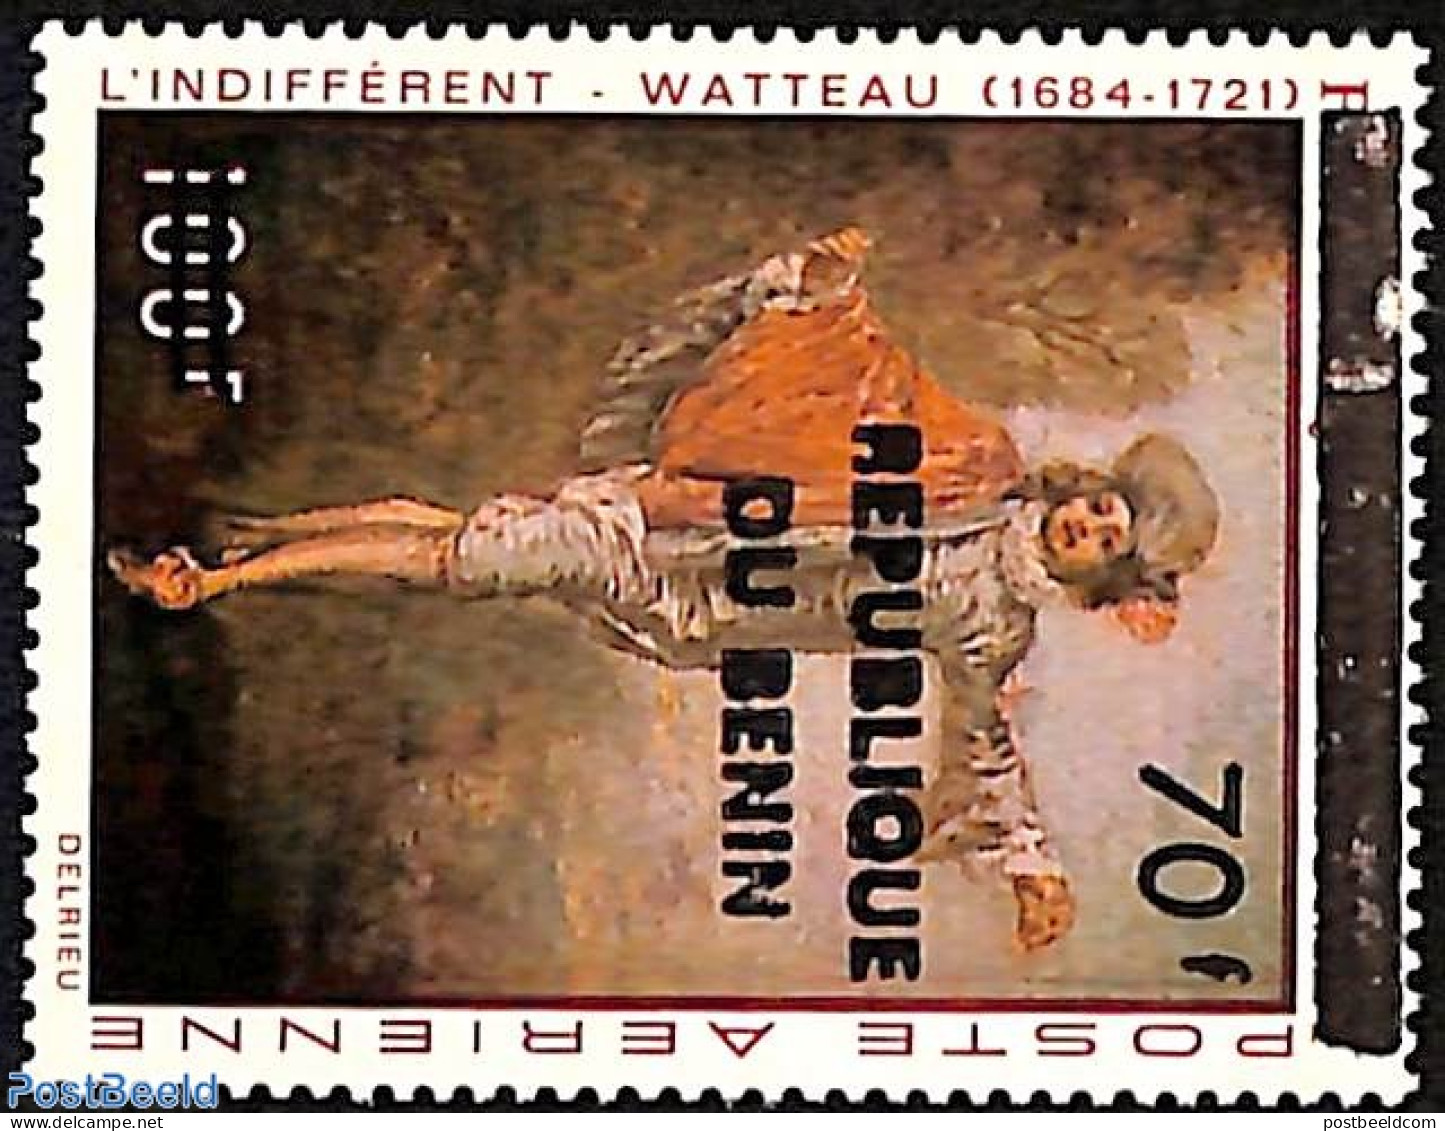 Benin 1998 Watteau, Overprint, Mint NH, Art - Paintings - Unused Stamps